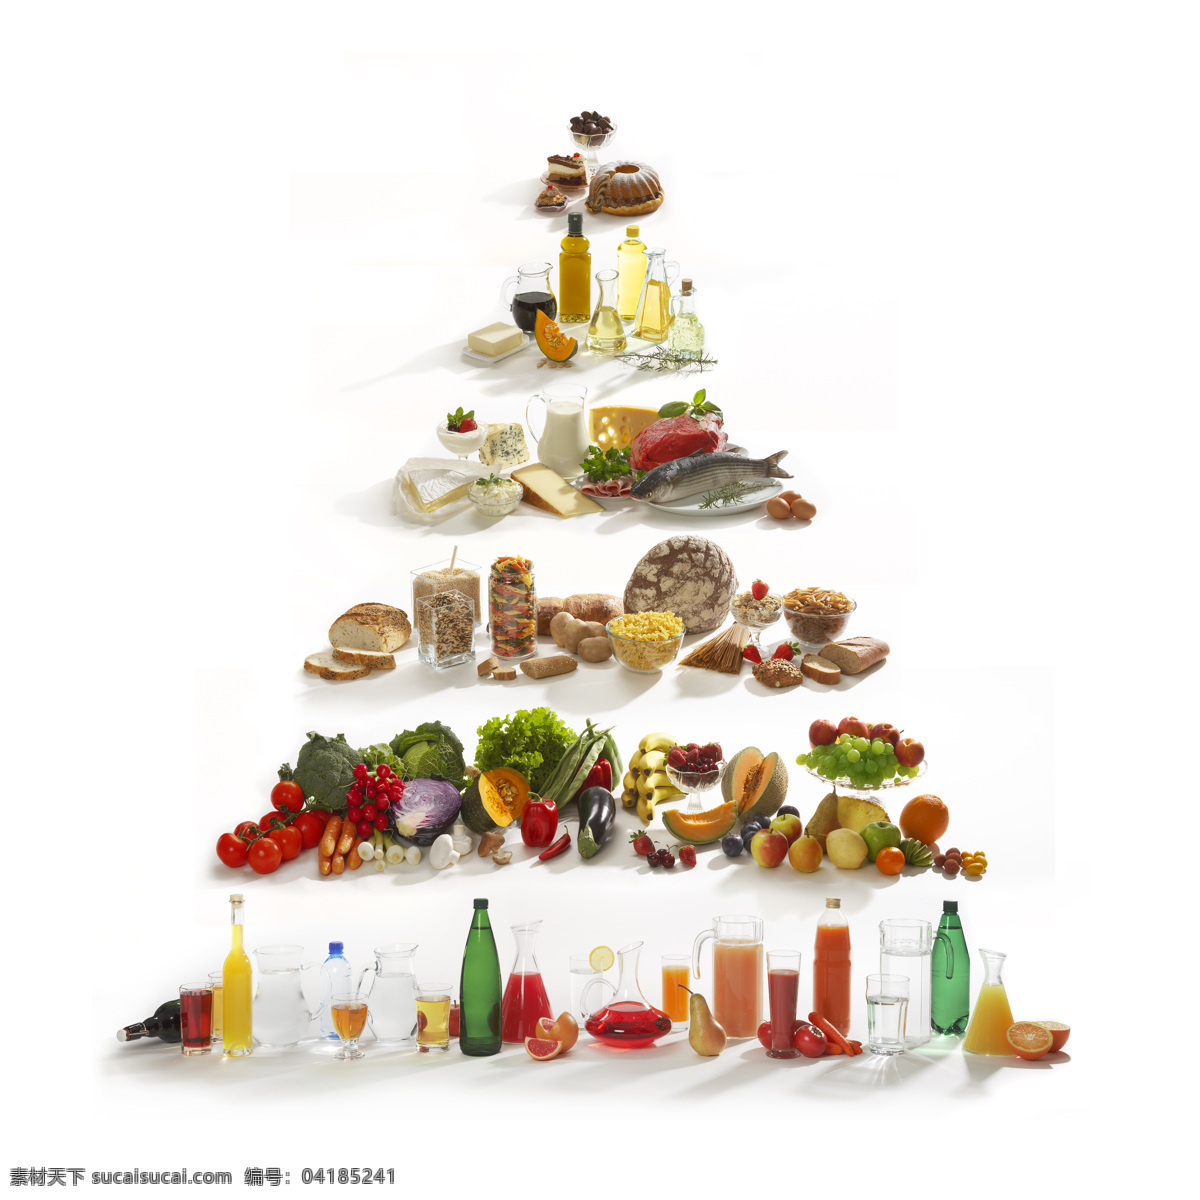 新鲜 食 材 金字塔 面包 橄榄油 食用油 新鲜蔬菜 果汁 调料 番茄 西红柿 蔬菜摄影 蔬菜图片 餐饮美食